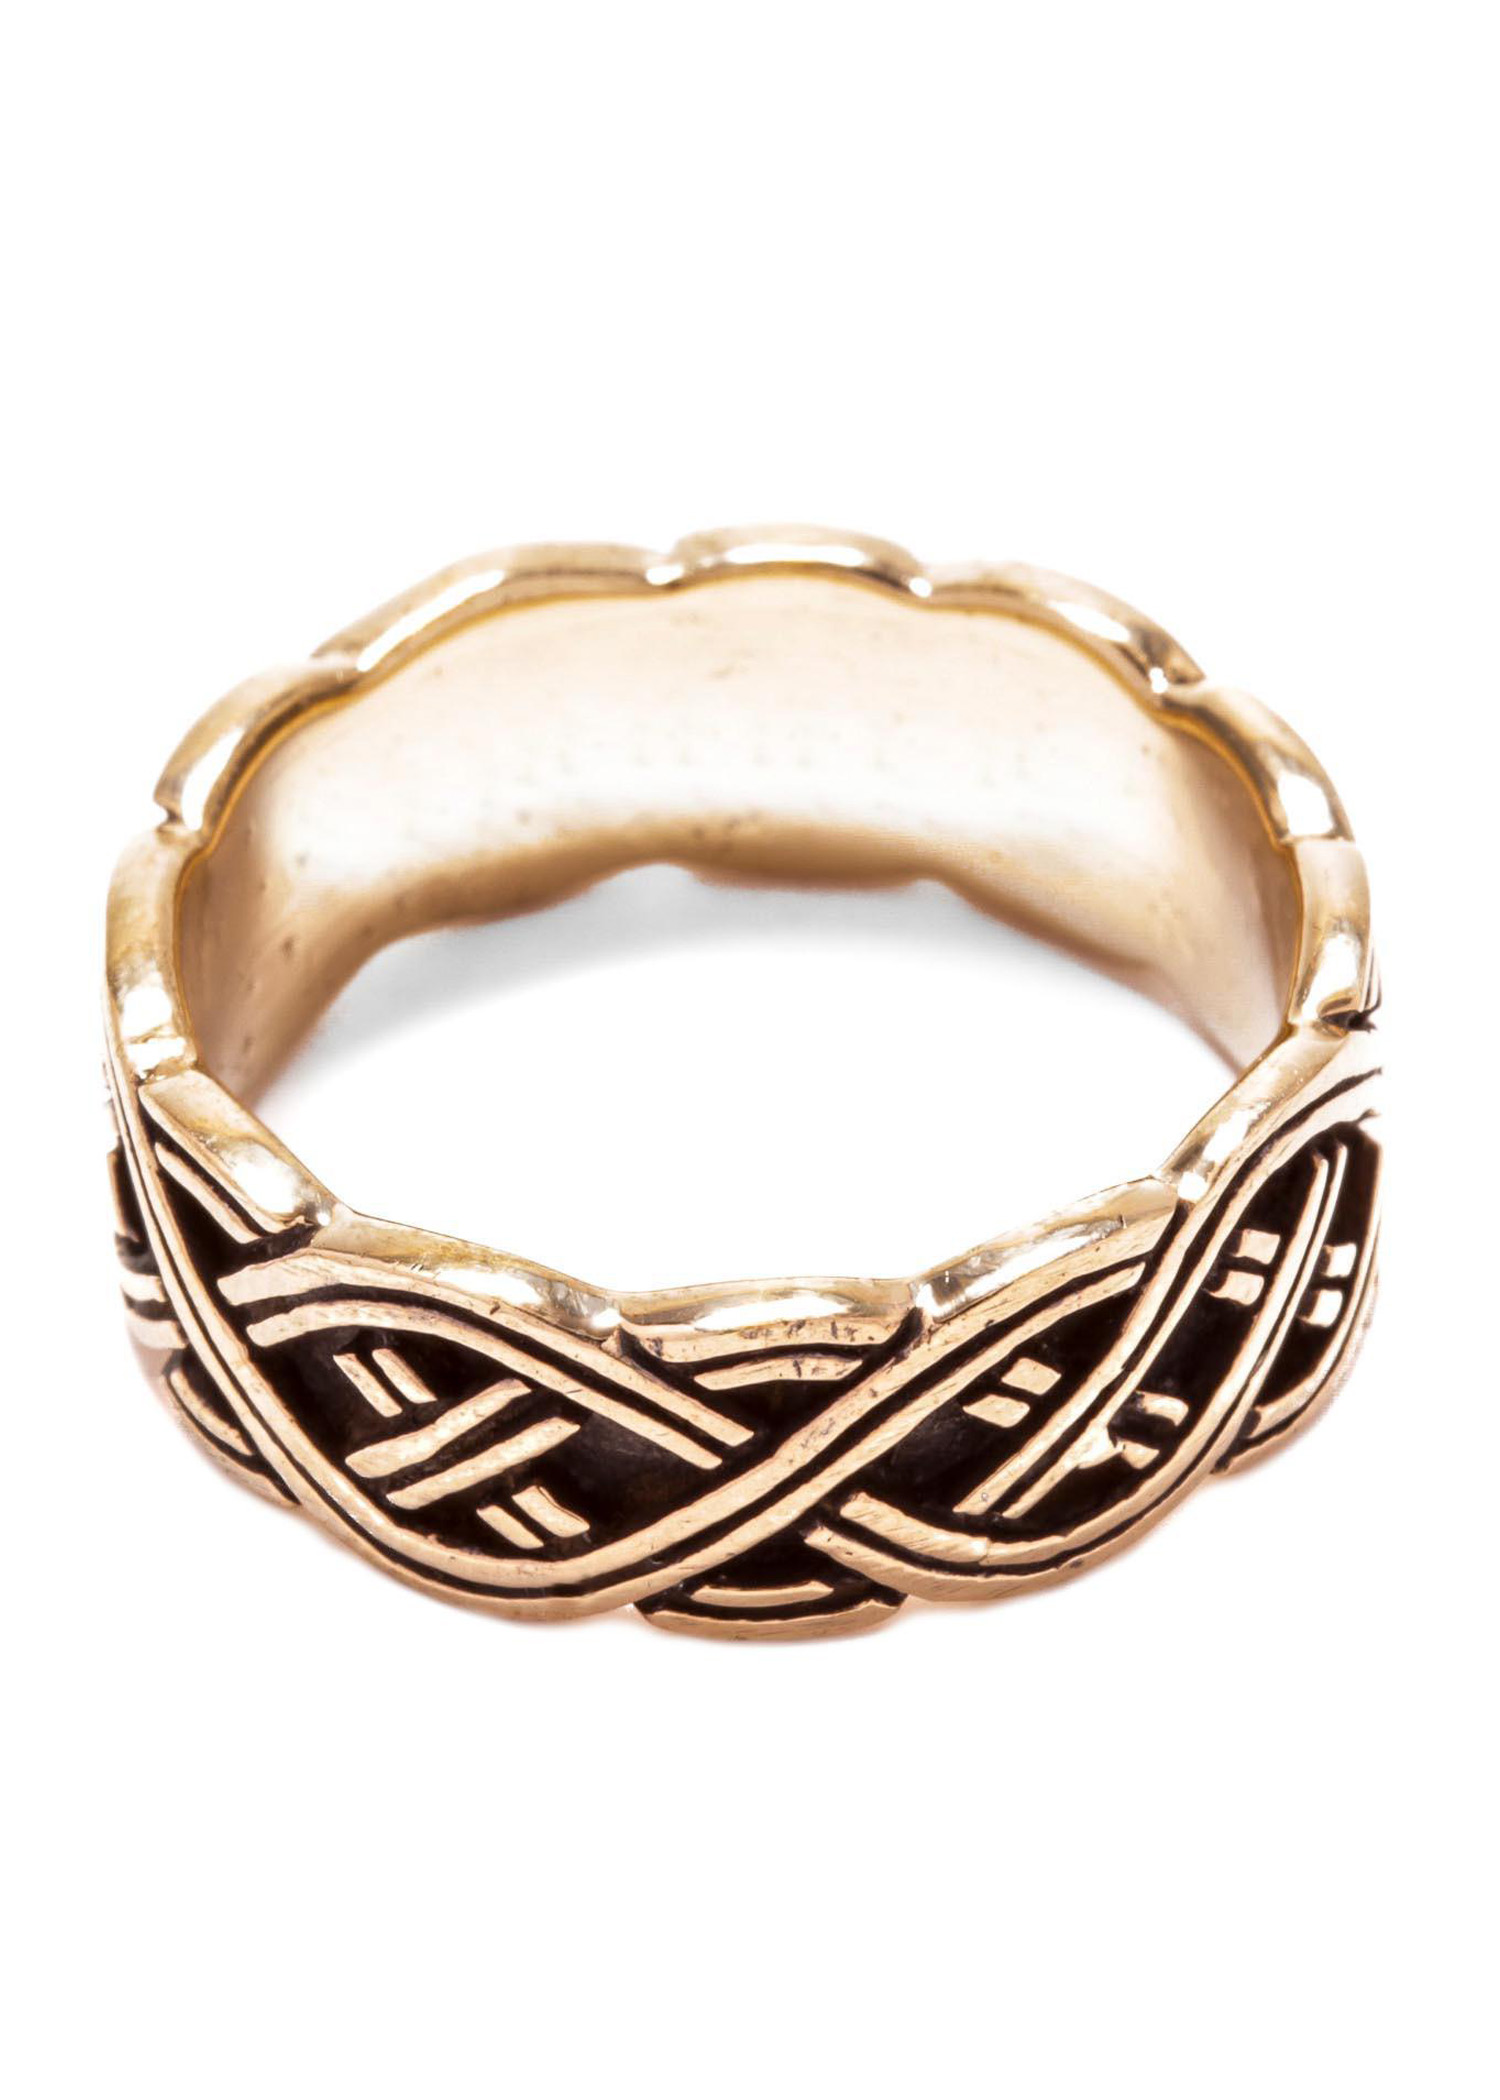 Nordmannen Ring aus Bronze, Ringgröße 18/56